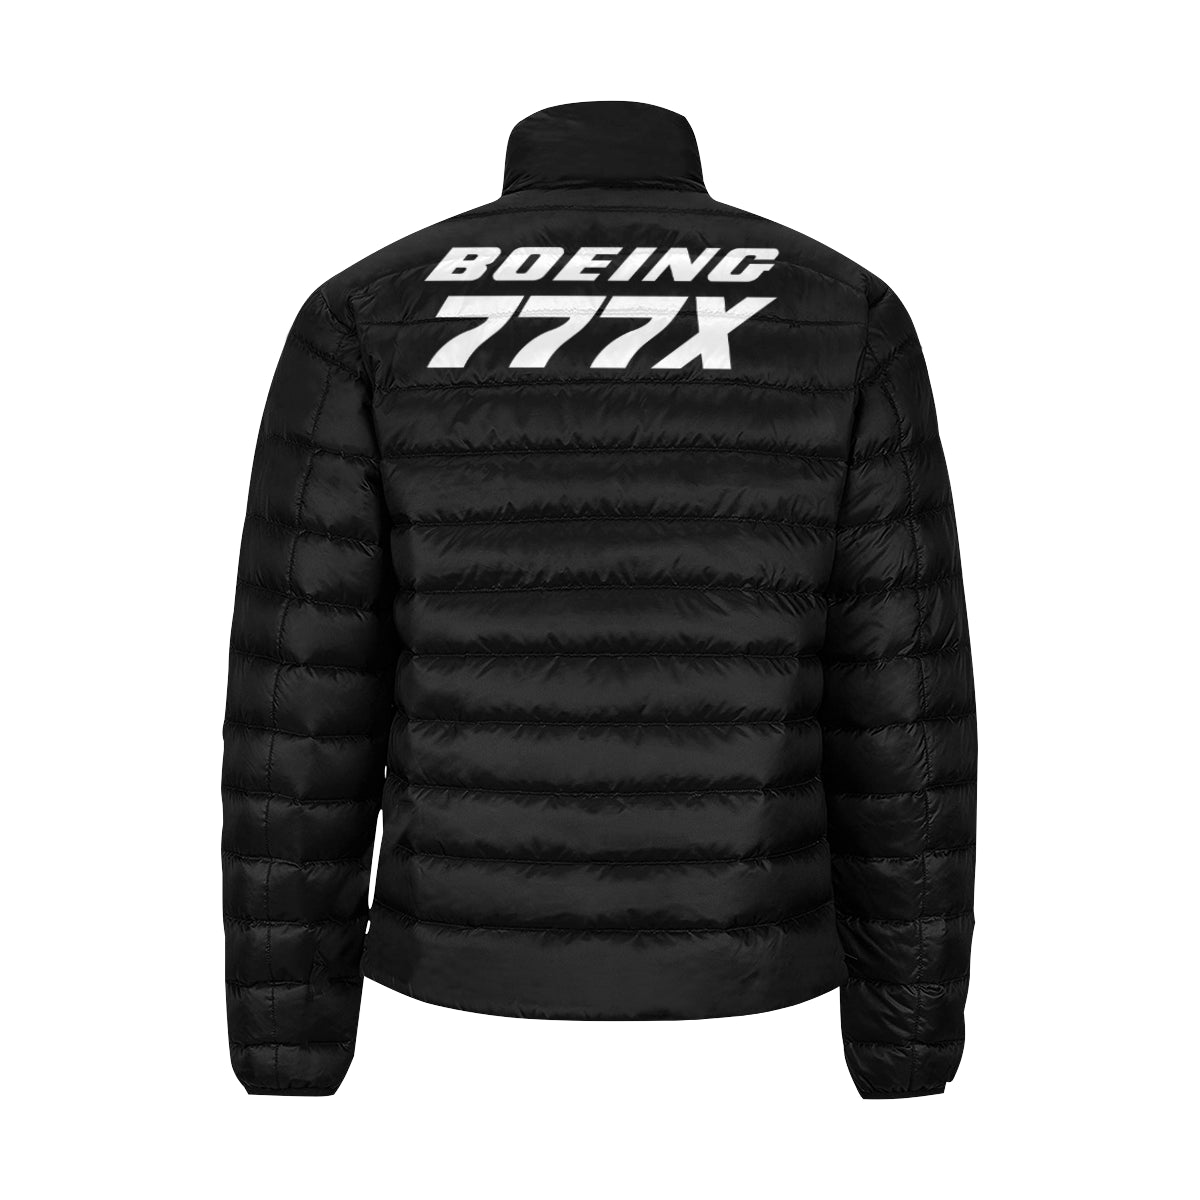 BOEING 777X Men's Stand Collar Padded Jacket e-joyer